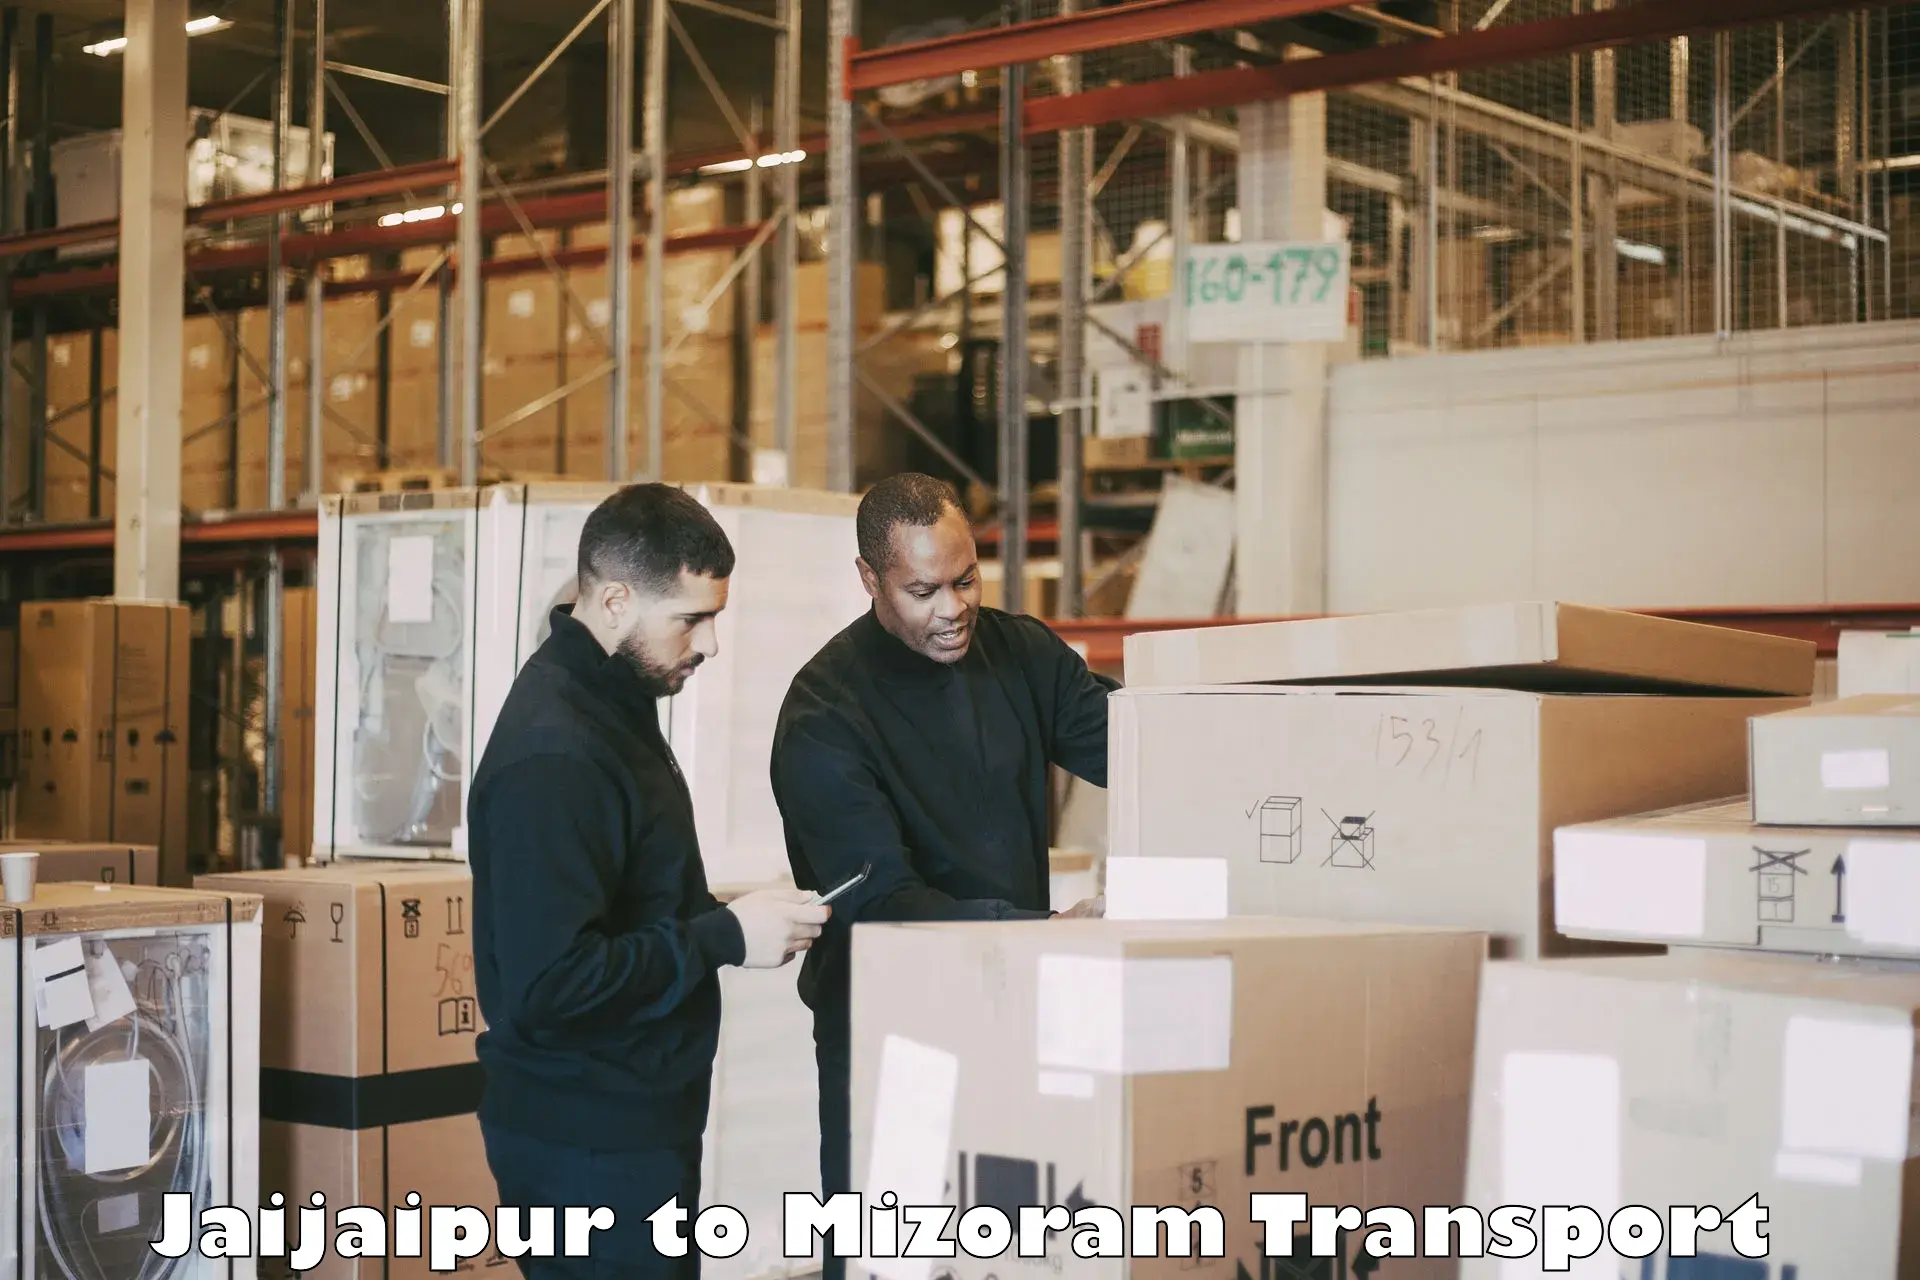 Interstate transport services Jaijaipur to Lunglei